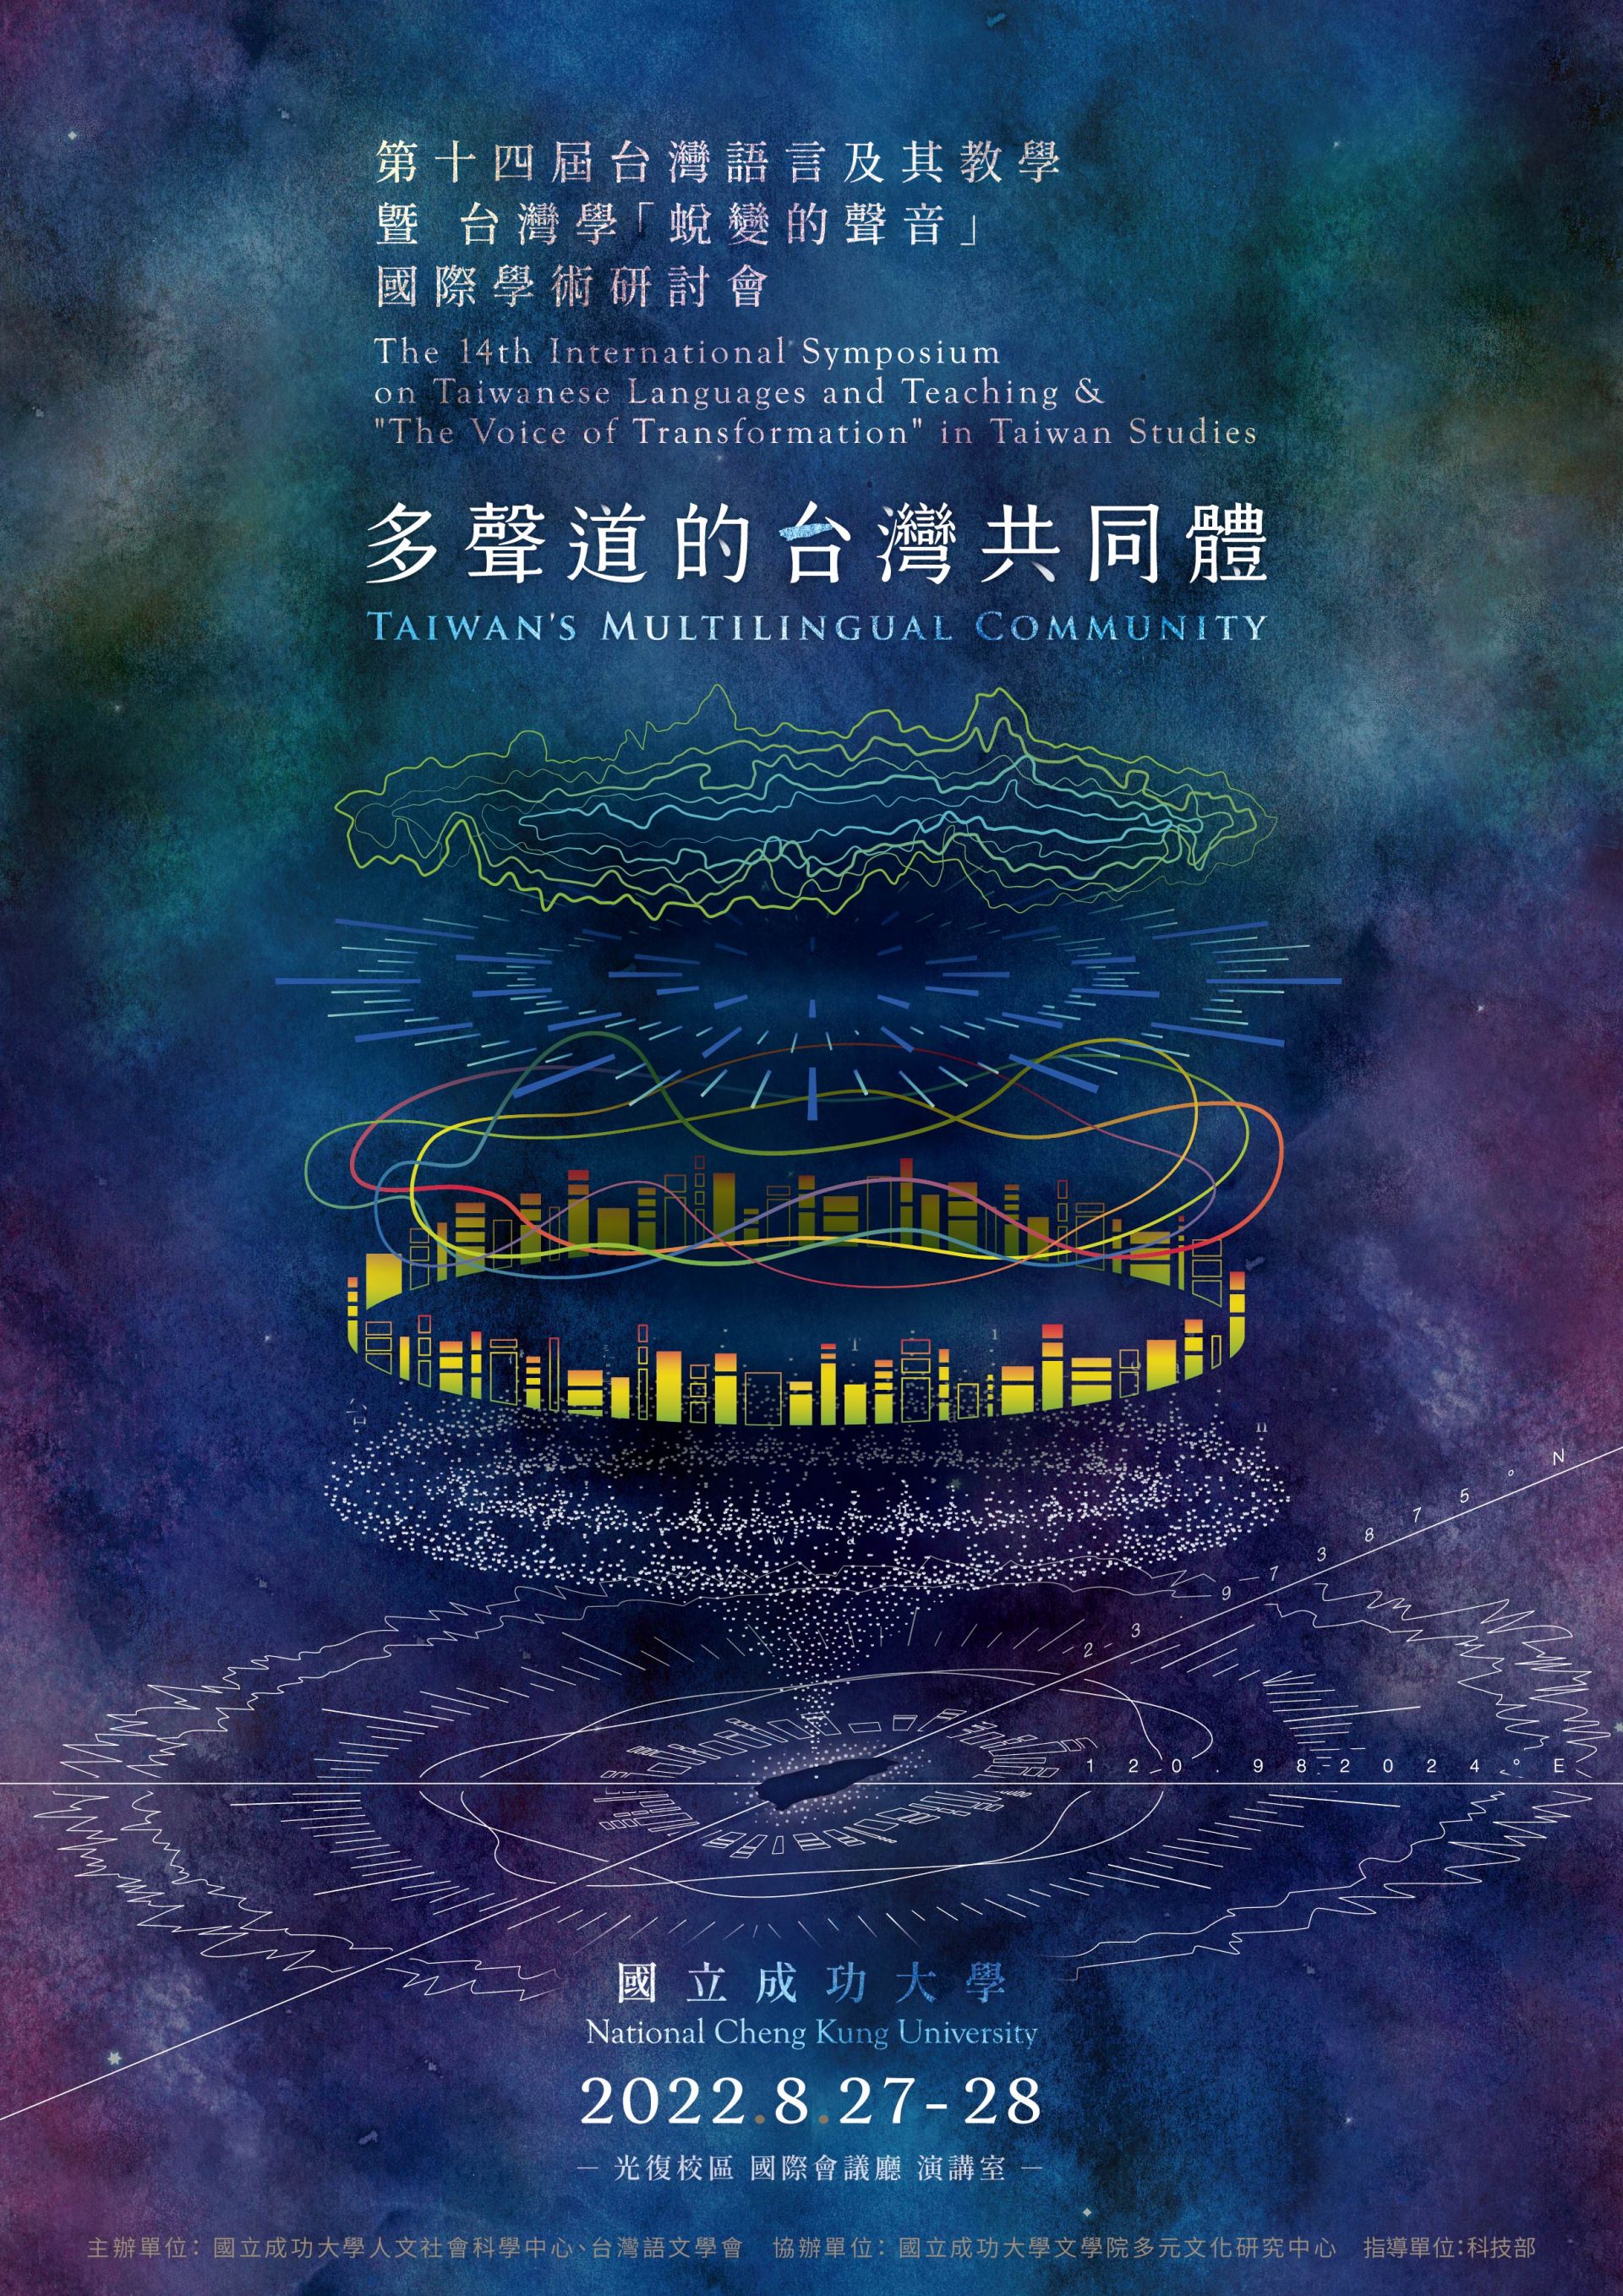 「多聲道的台灣共同體」國際學術研討會